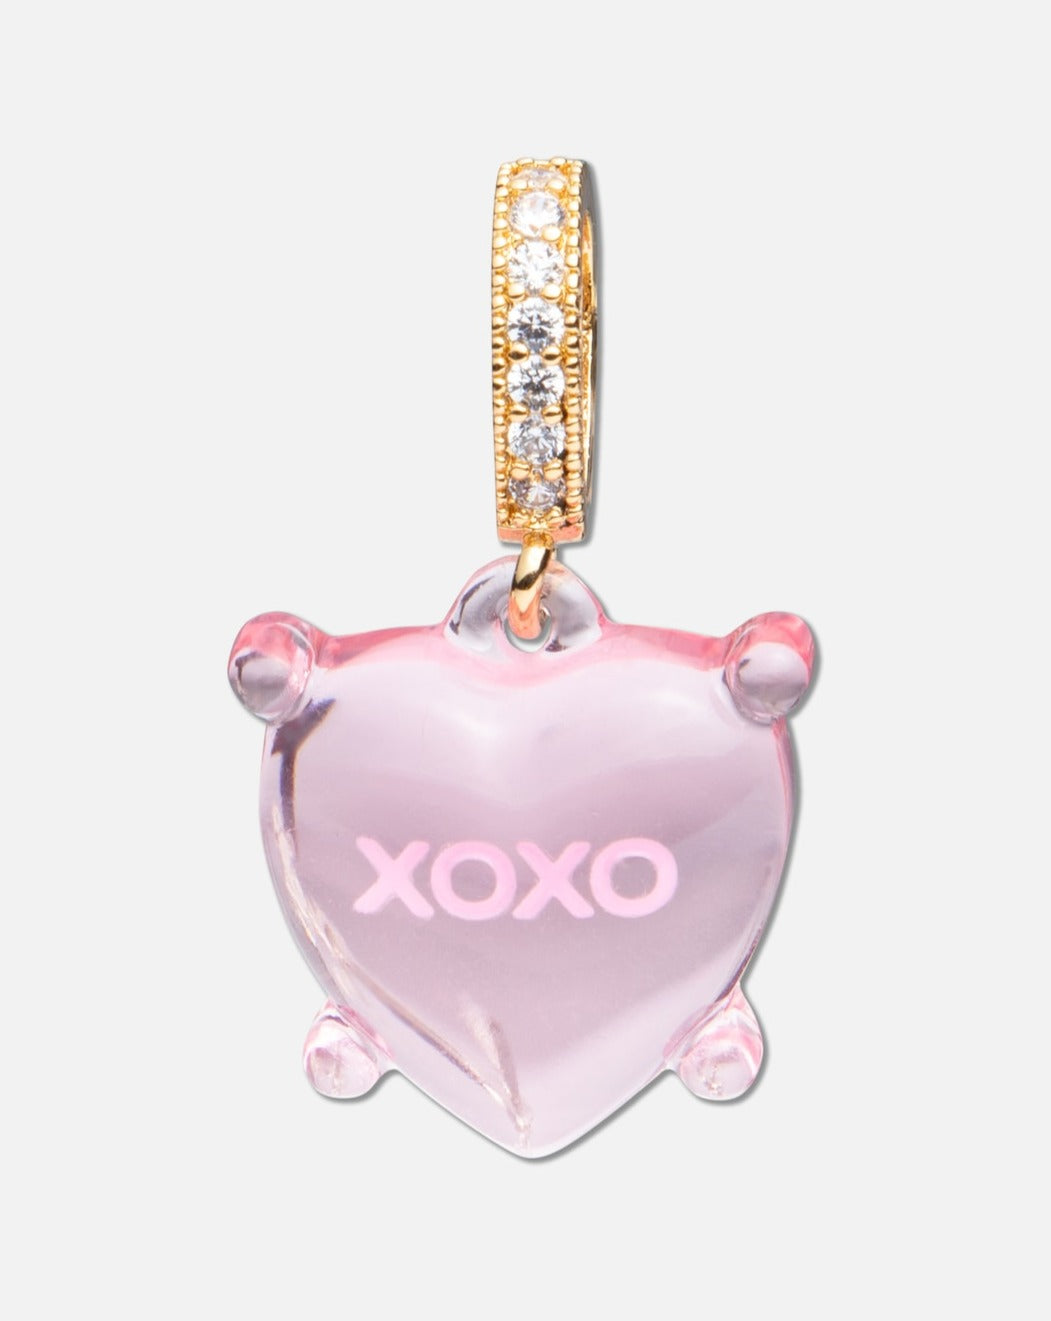 XOXO pendant by Crystal Haze